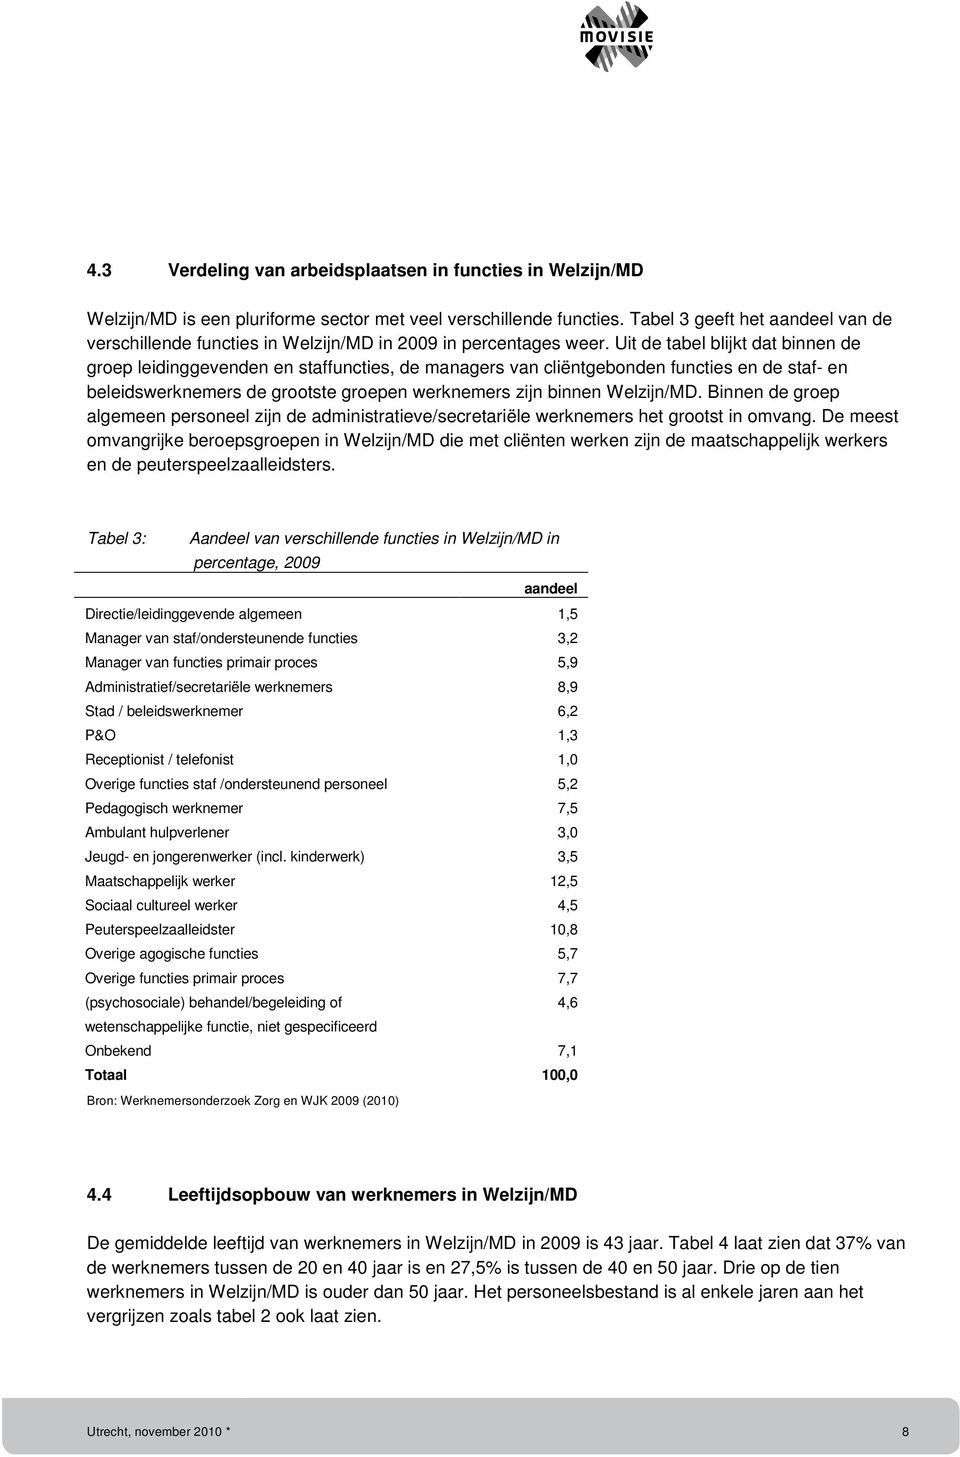 Uit de tabel blijkt dat binnen de groep leidinggevenden en staffuncties, de managers van cliëntgebonden functies en de staf- en beleidswerknemers de grootste groepen werknemers zijn binnen Welzijn/MD.